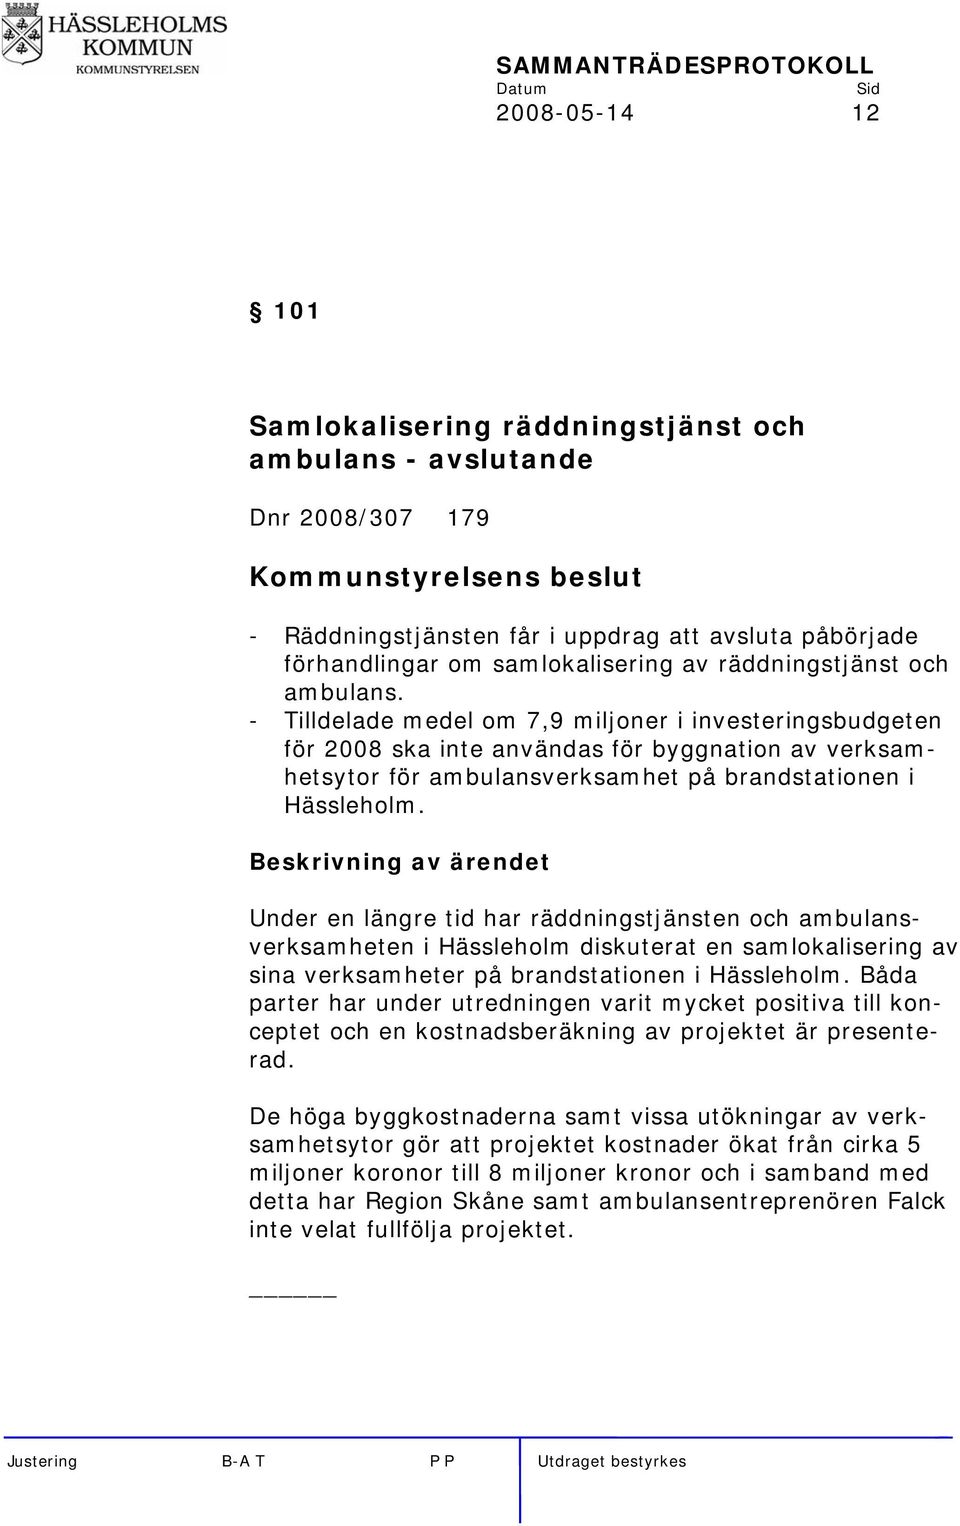 - Tilldelade medel om 7,9 miljoner i investeringsbudgeten för 2008 ska inte användas för byggnation av verksamhetsytor för ambulansverksamhet på brandstationen i Hässleholm.